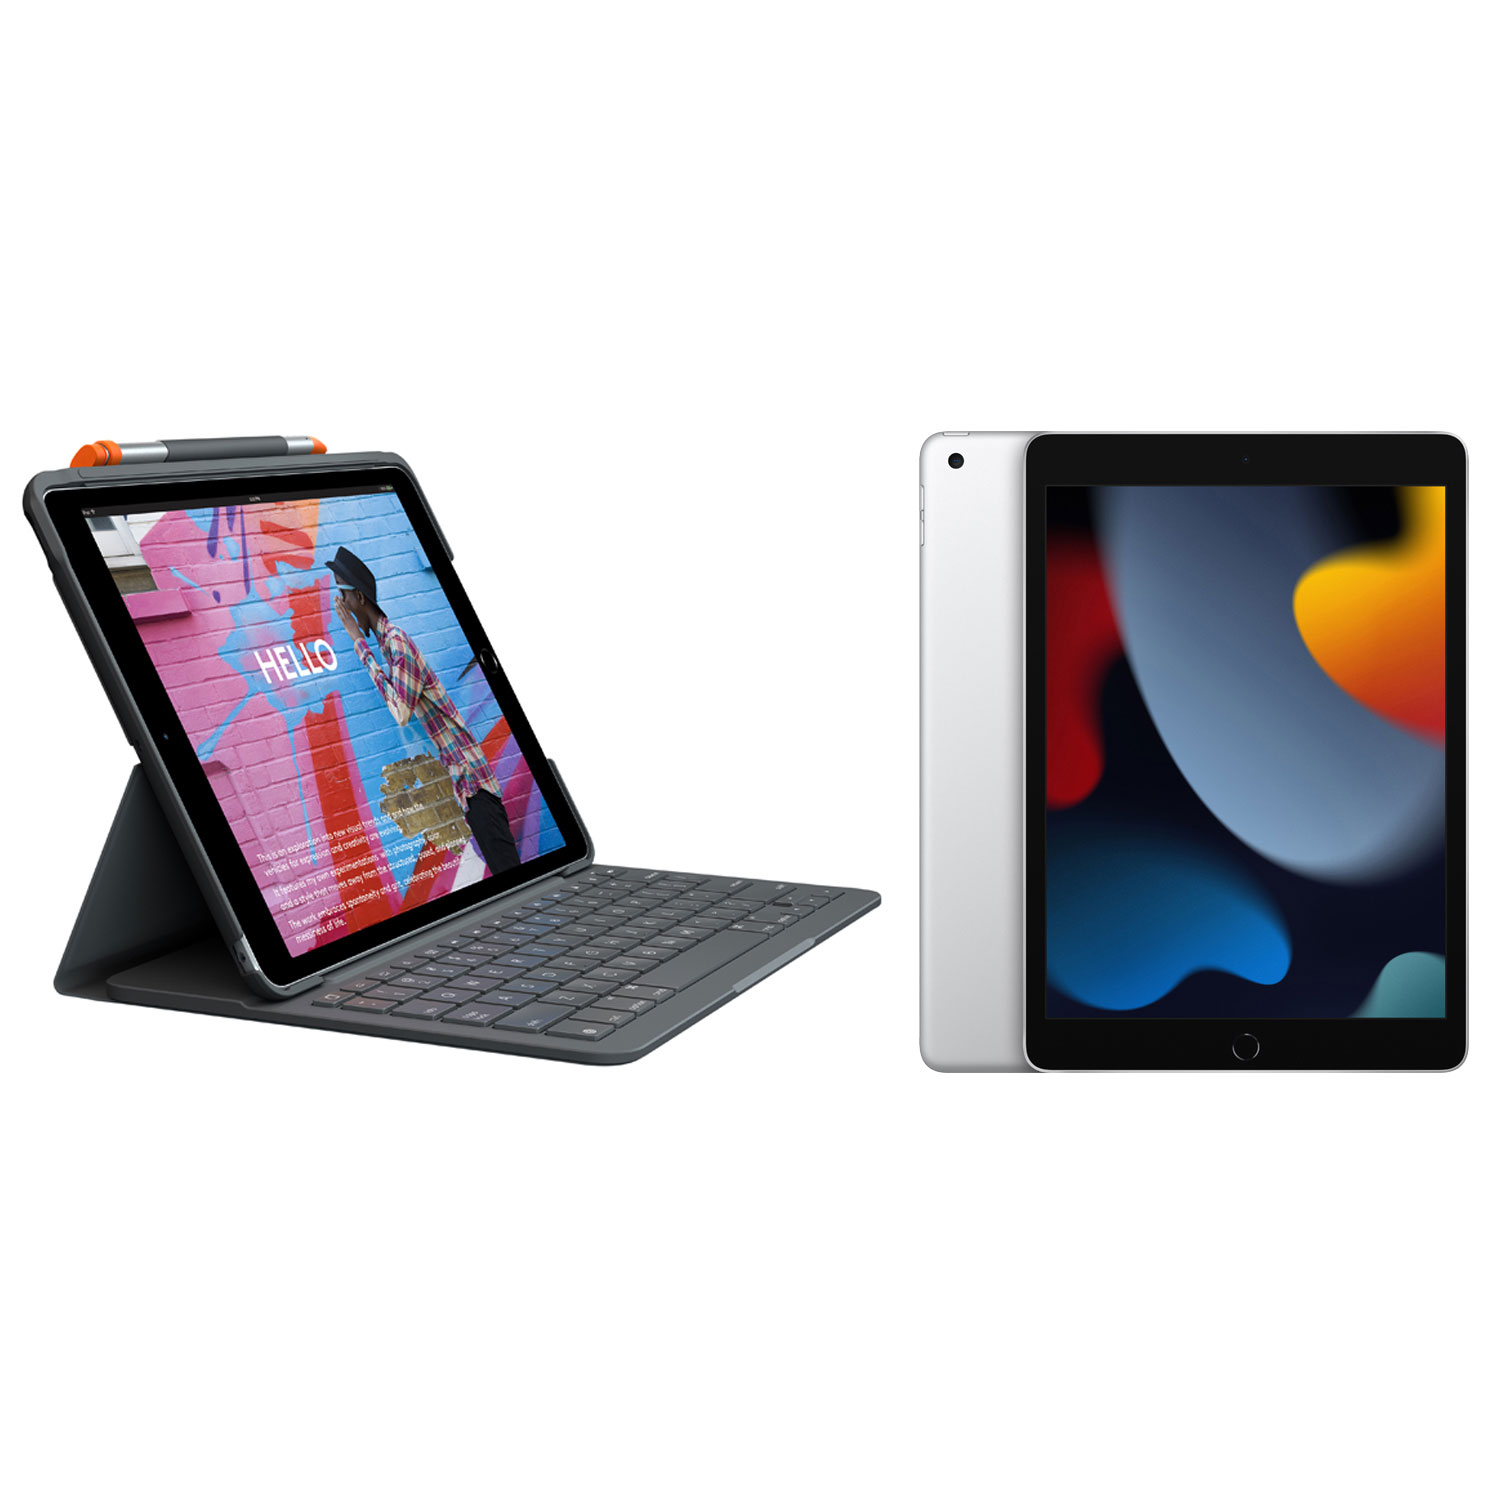 Apple iPad 10.2" 64GB with Wi-Fi (9th Generation) & Logitech Keyboard Slim Folio Case - Silver